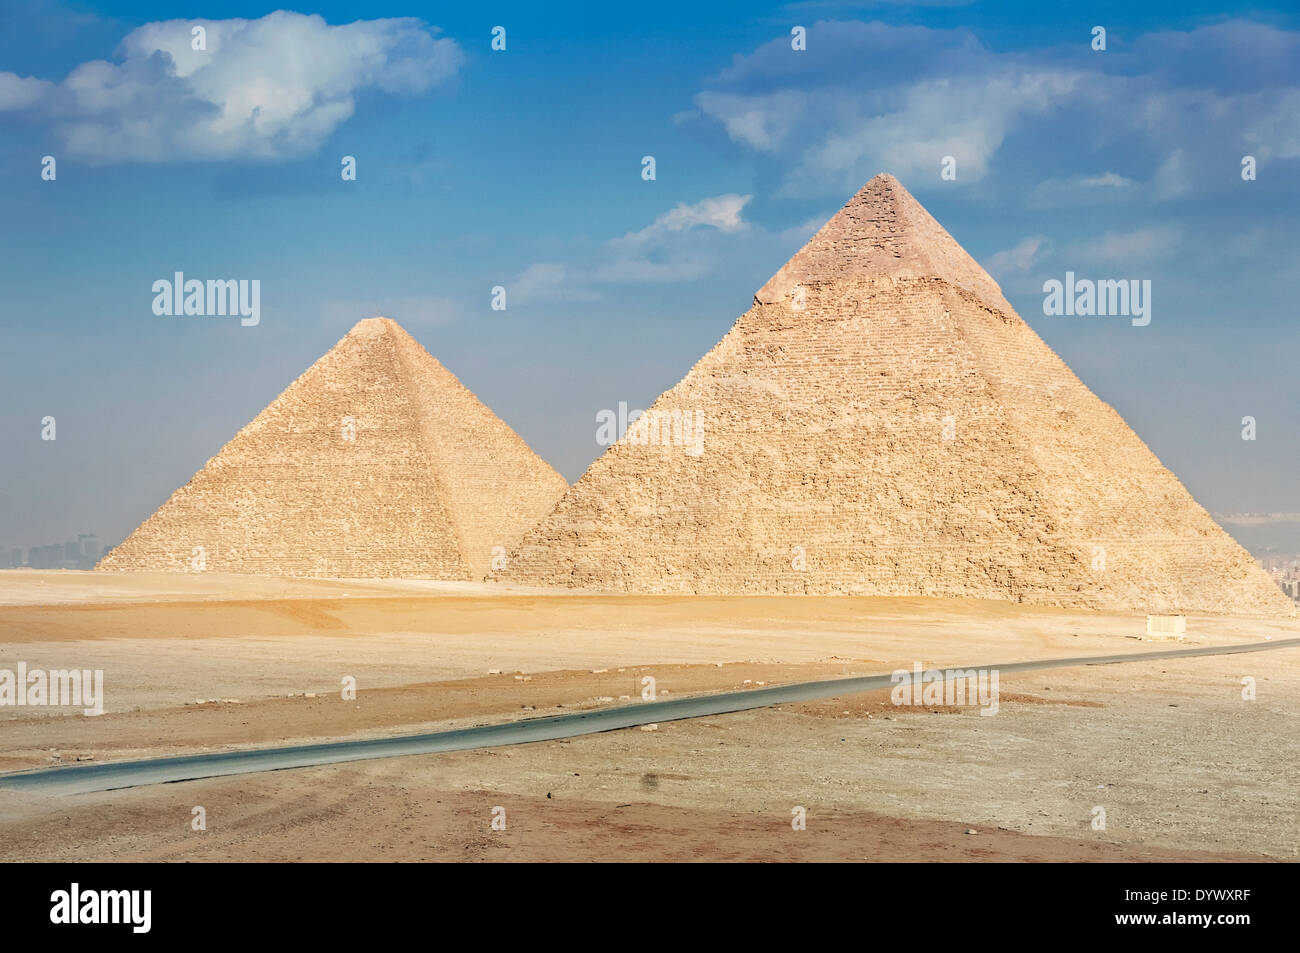 Pyramide von Khufu und Pyramide von Khafre - zwei der berühmten Pyramiden von Gizeh in Ägypten. Stockfoto